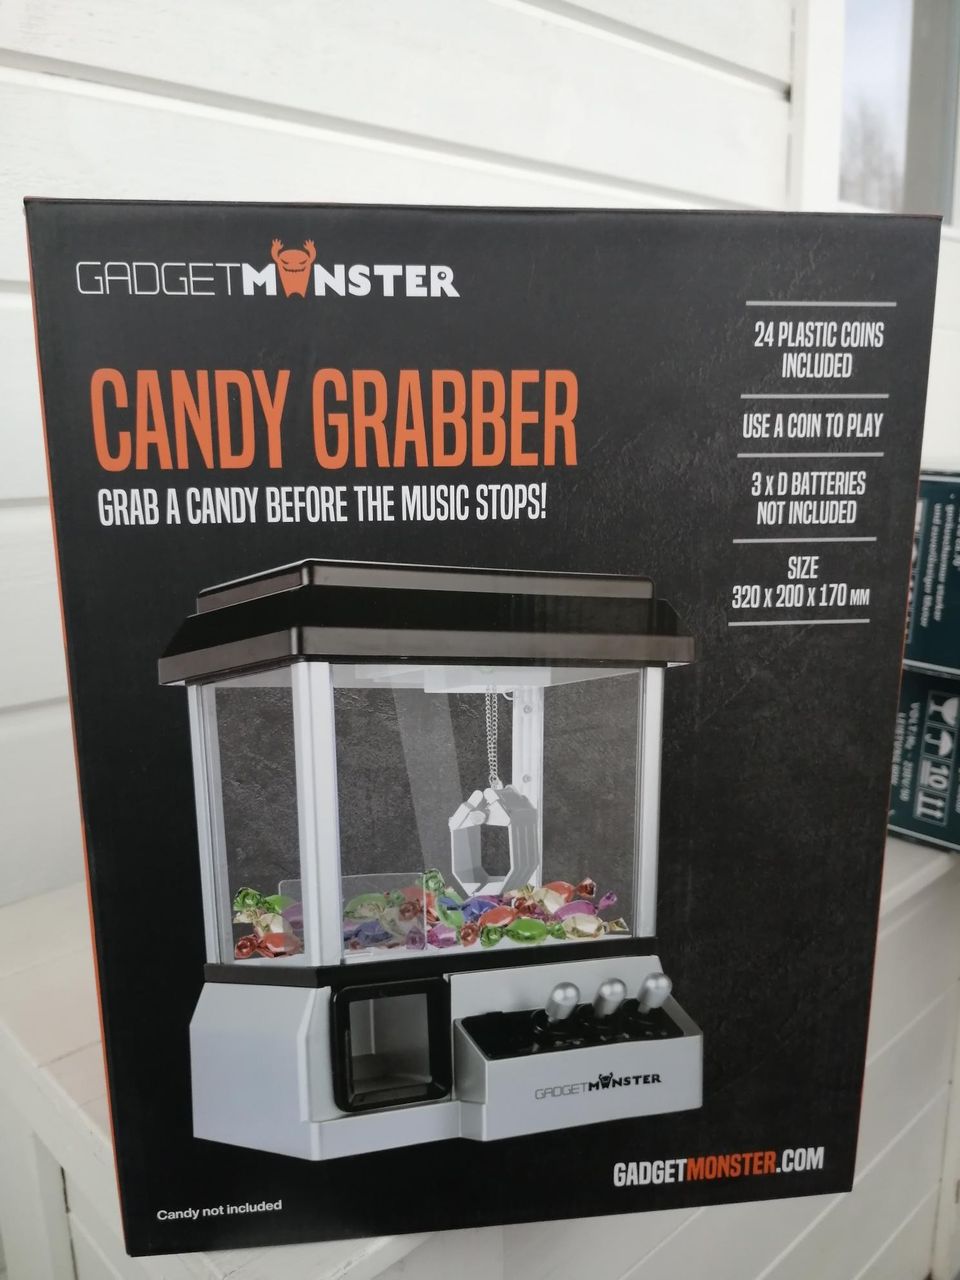 Candy Grabber